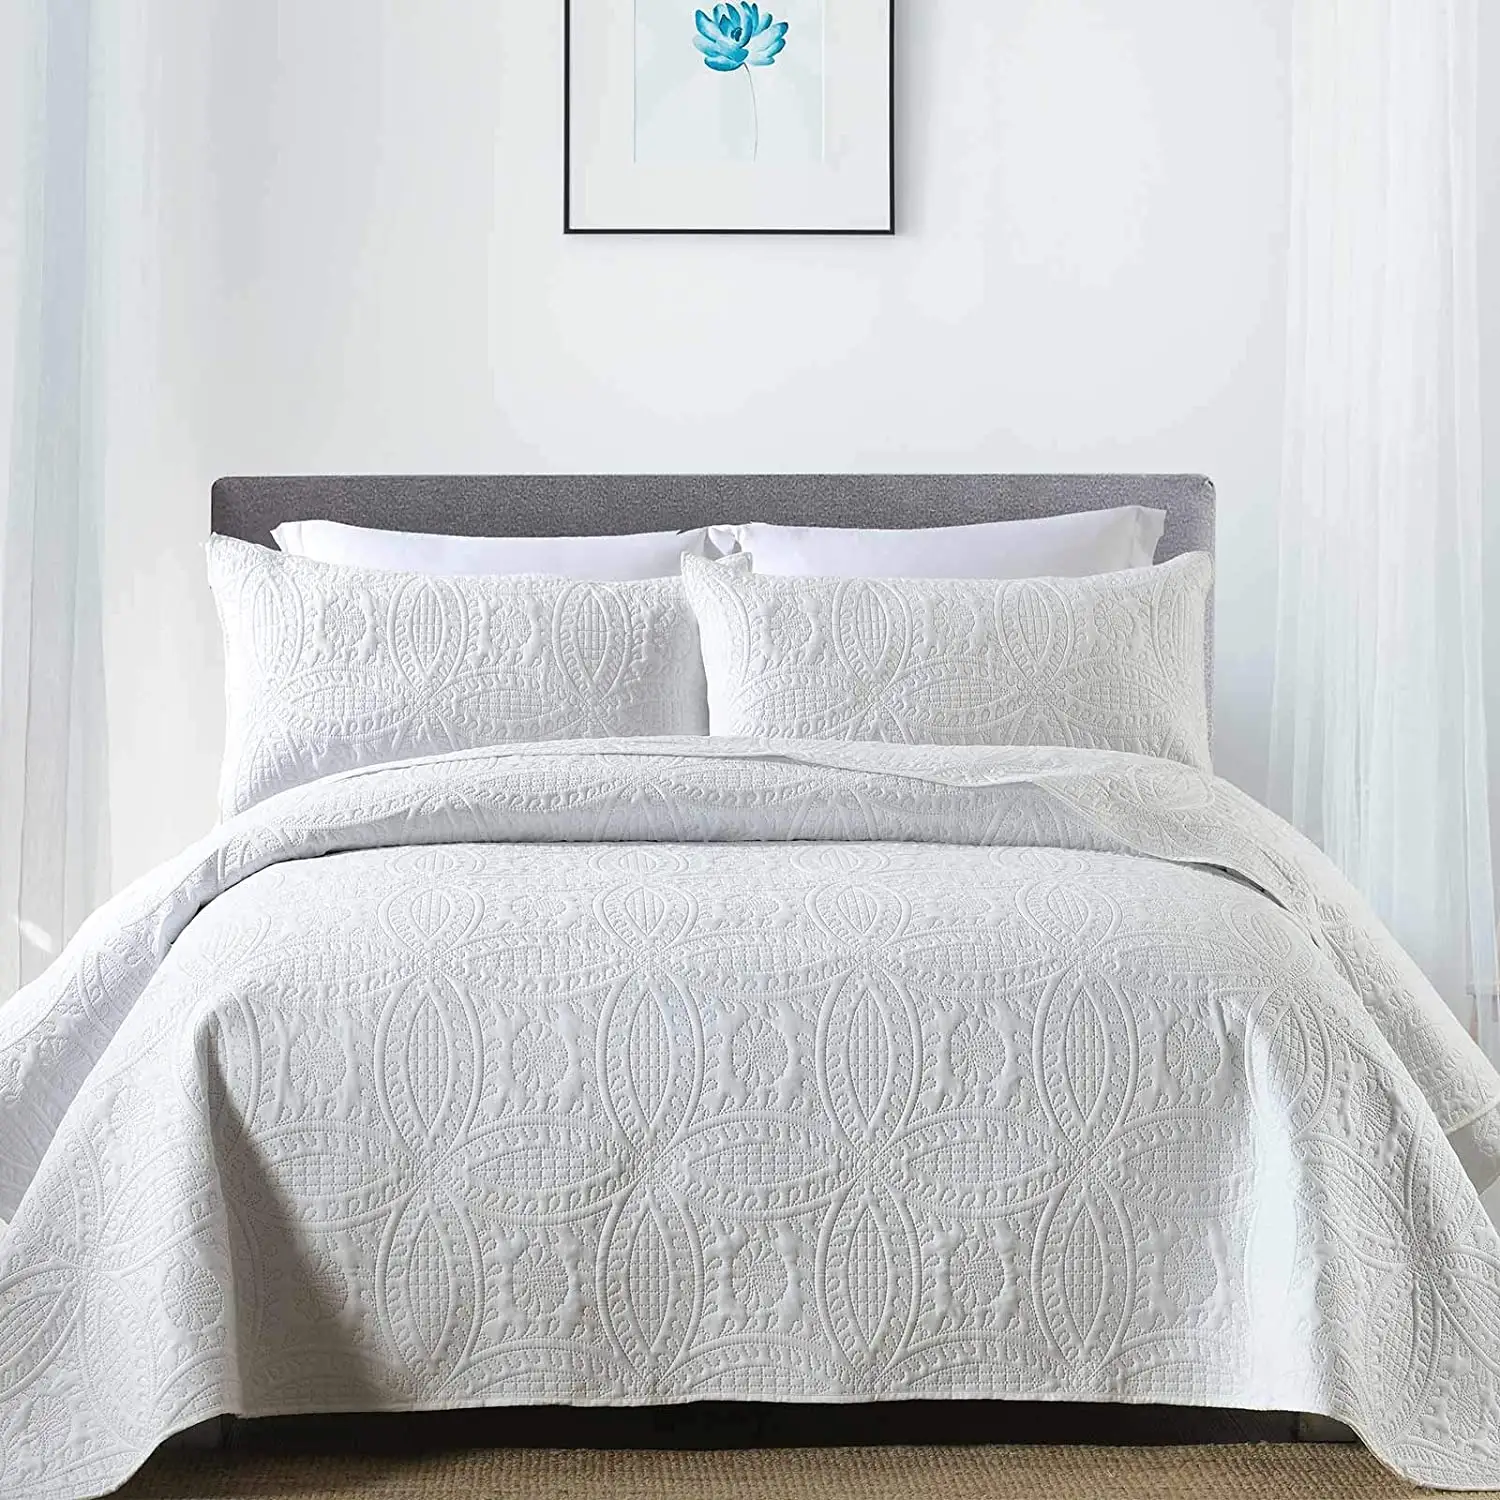 Chất lượng cao giải phóng mặt bằng thêu bedspread bedding Set chắp vá Quilt 3 miếng Set King size Queen size Luxury bedding Set